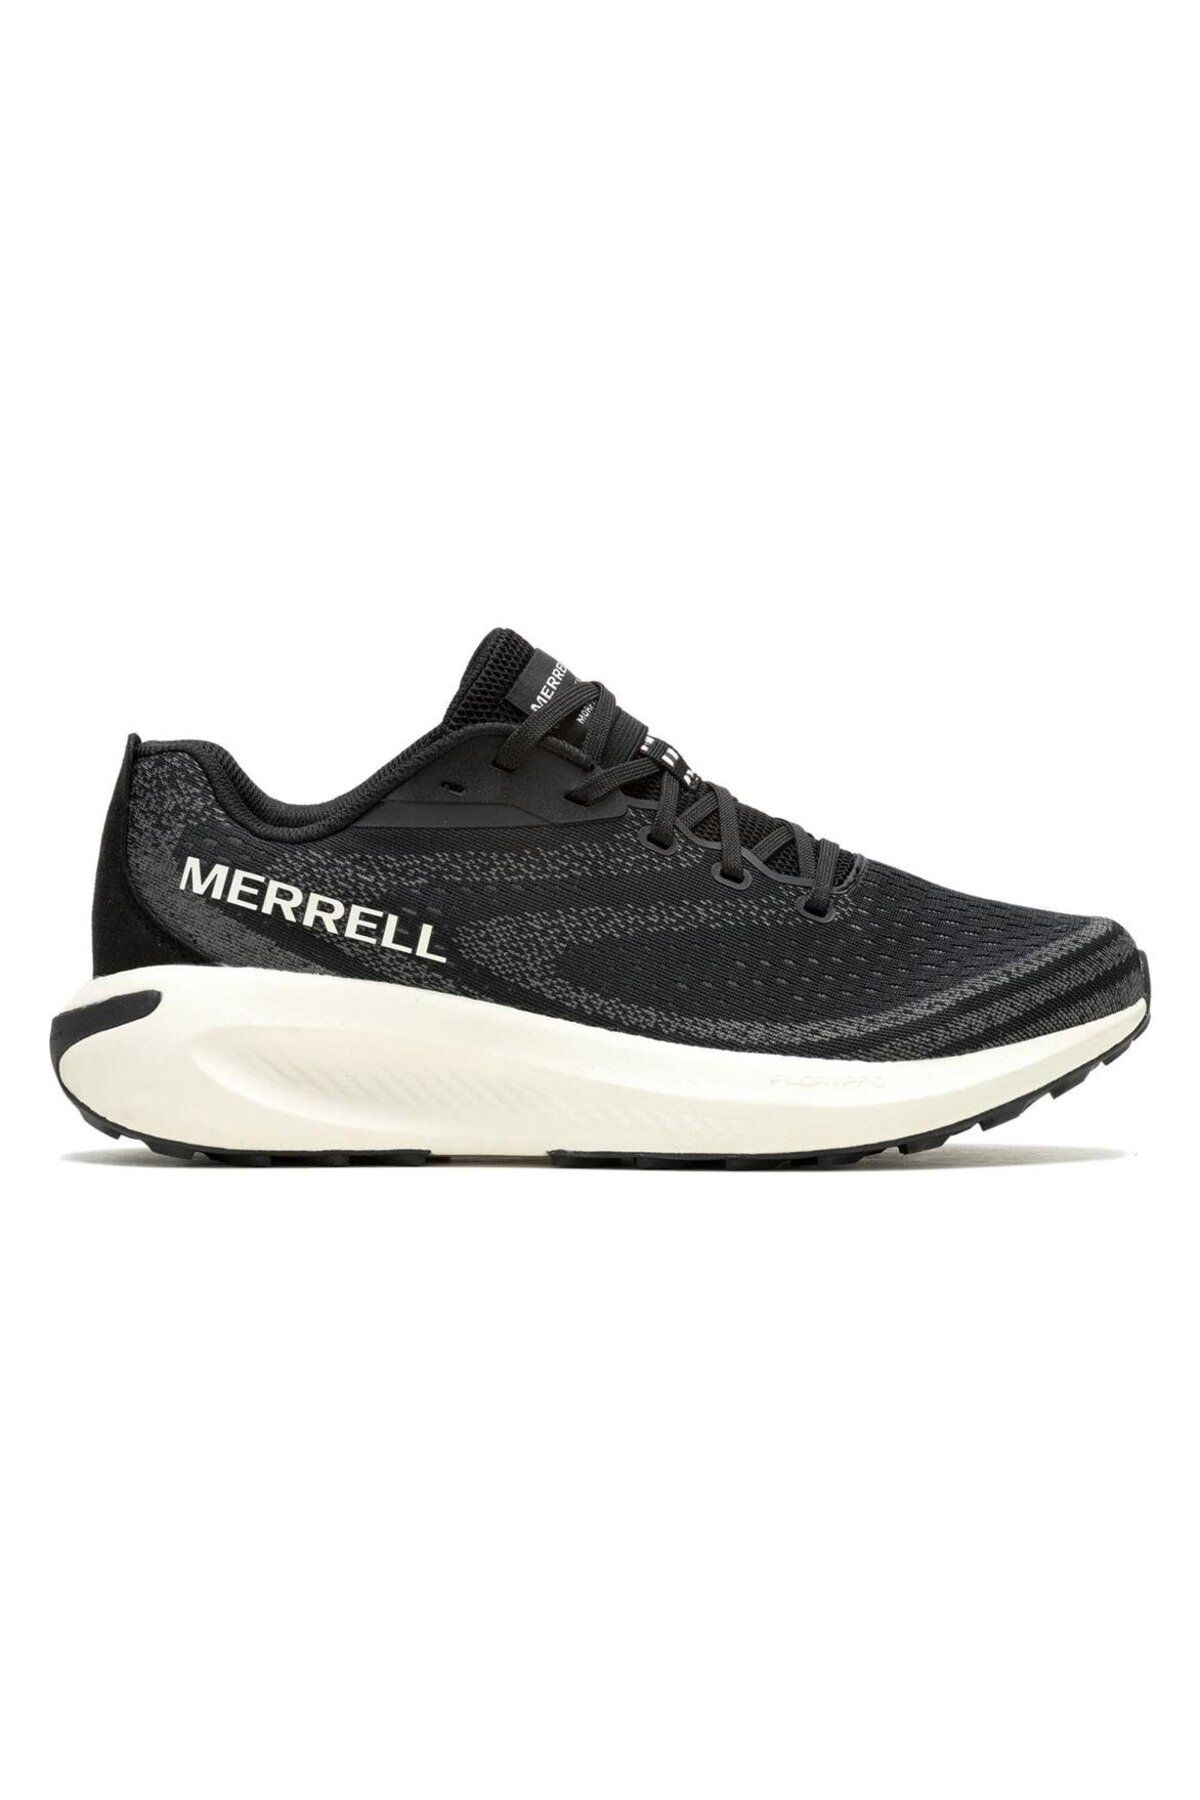 Merrell Morphlıte Siyah Erkek Patika Koşu Ayakkabısı